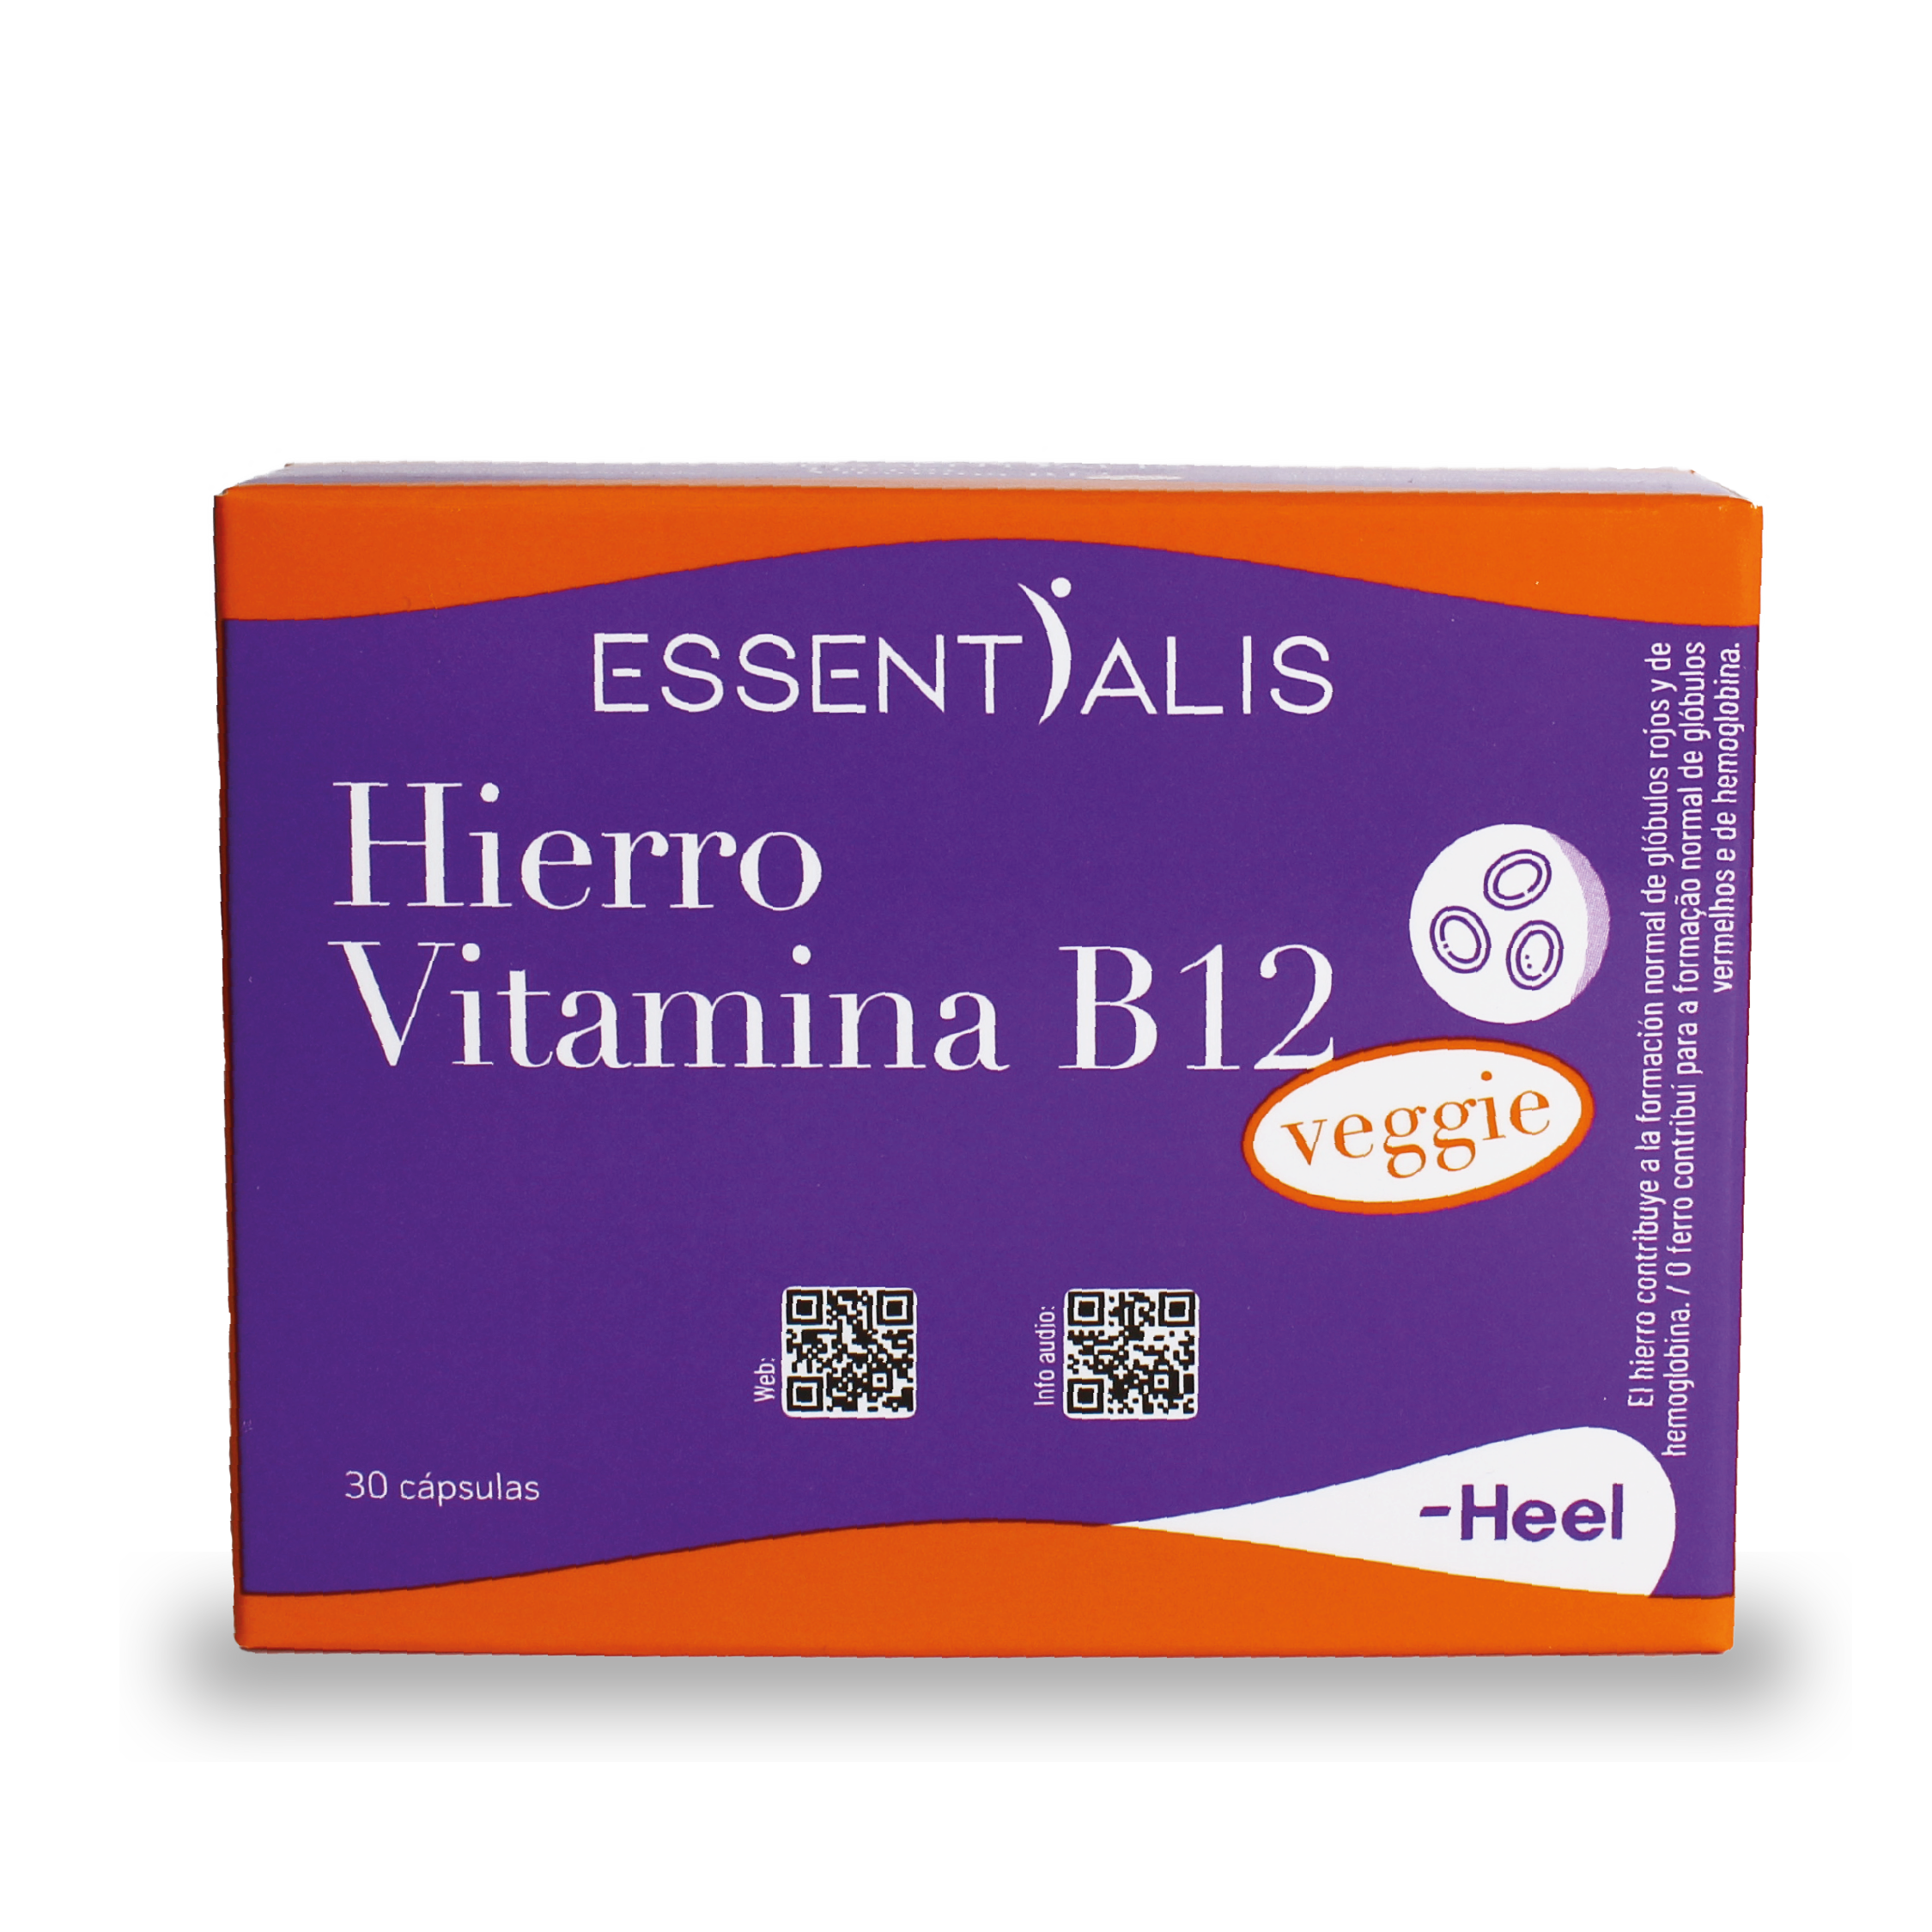 Caja de Essentialis Hierro Vitamina B12 Veggie